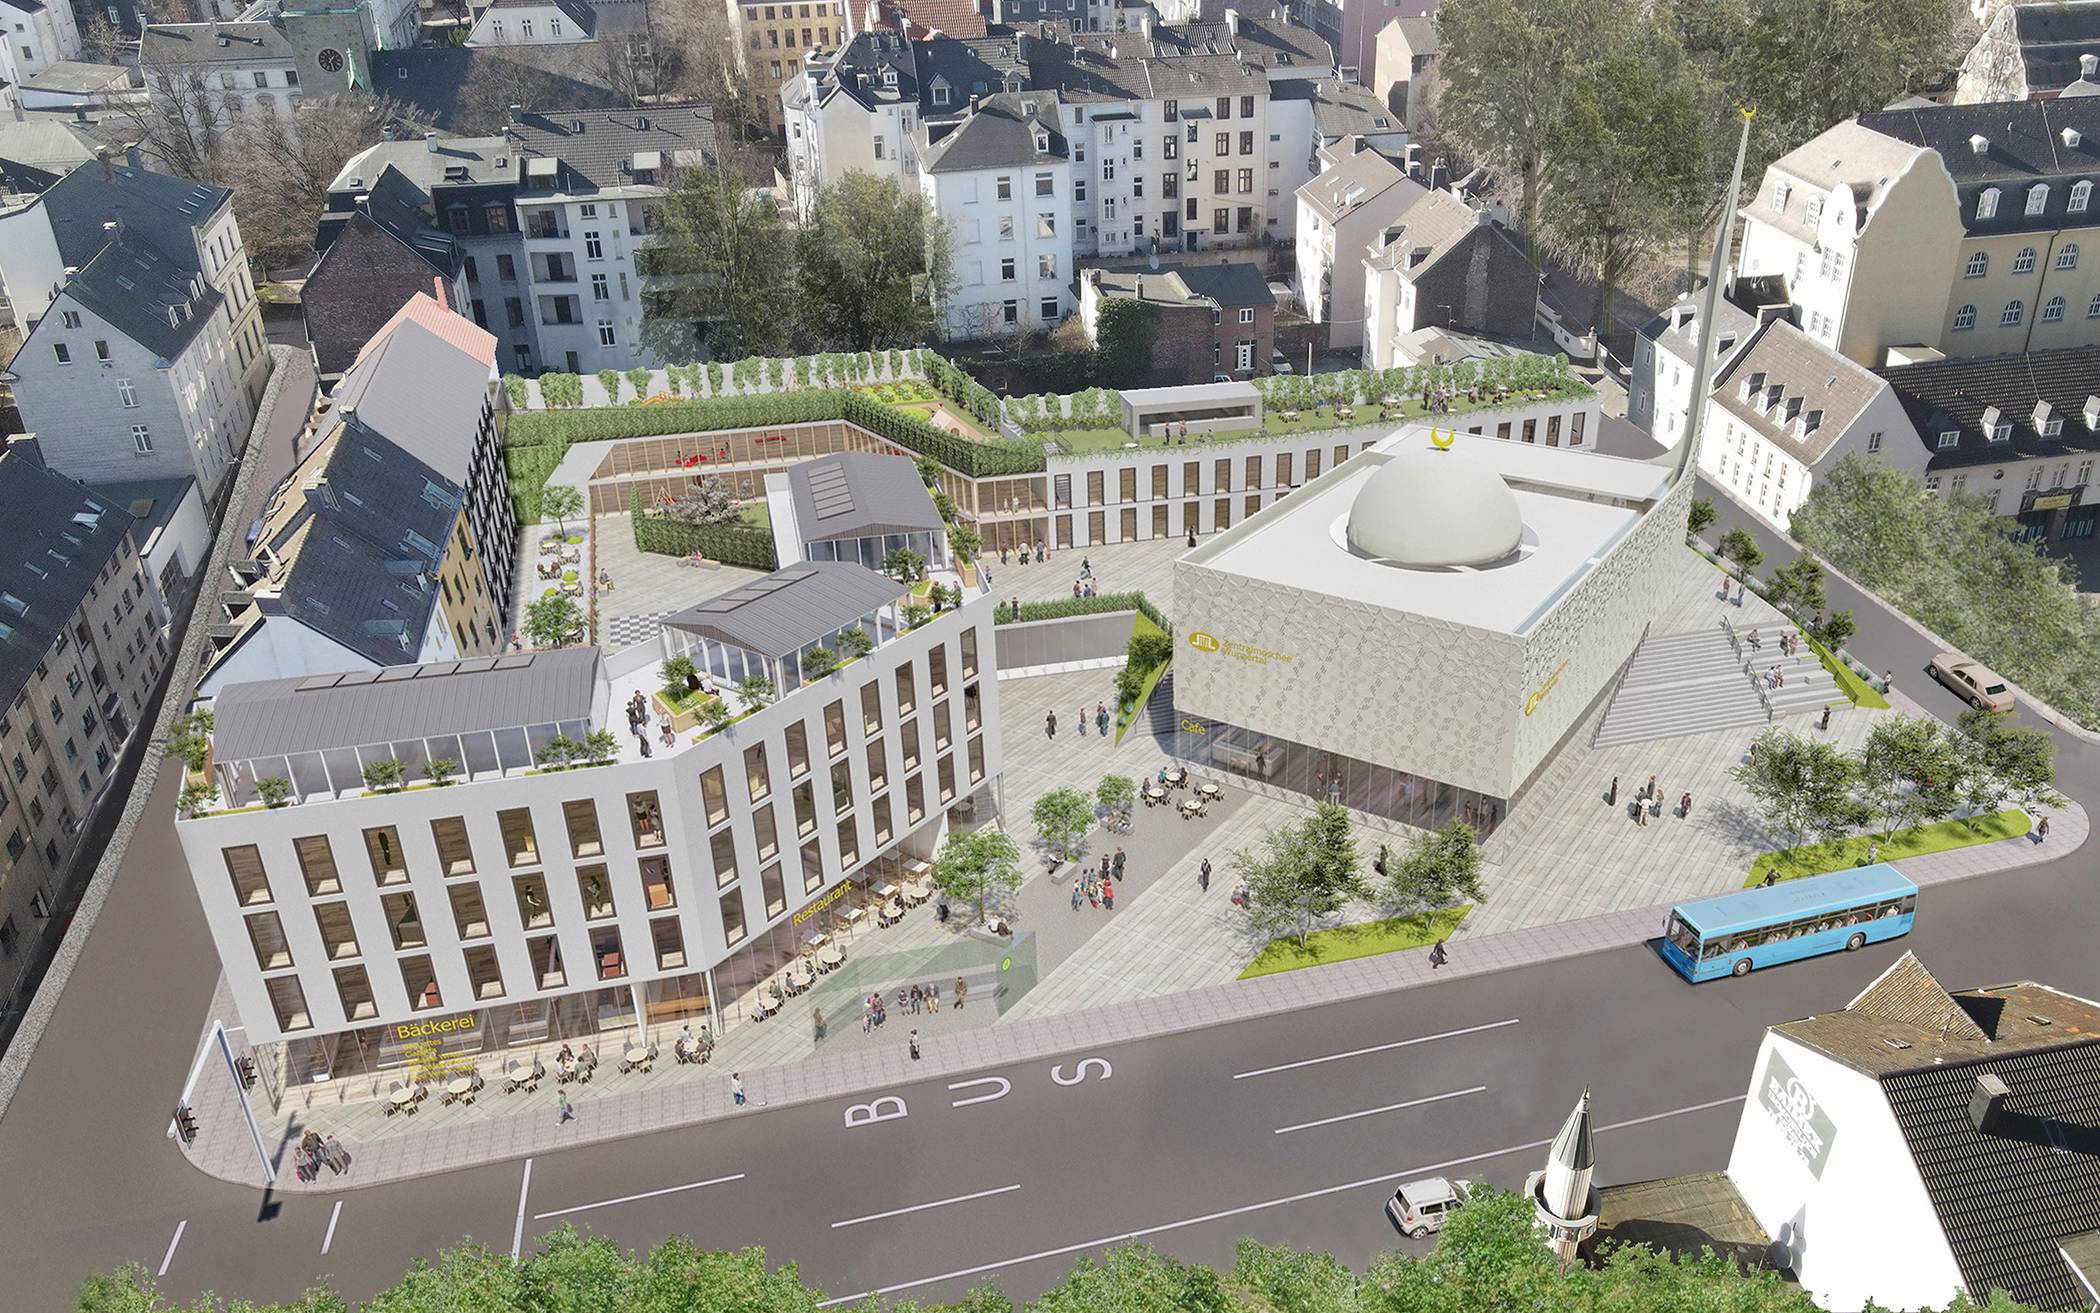  Eine Visualisierung aus dem Dezember 2021 des an der Gathe geplanten Moschee-Areals der DITIB-Gemeinde Wuppertal. 